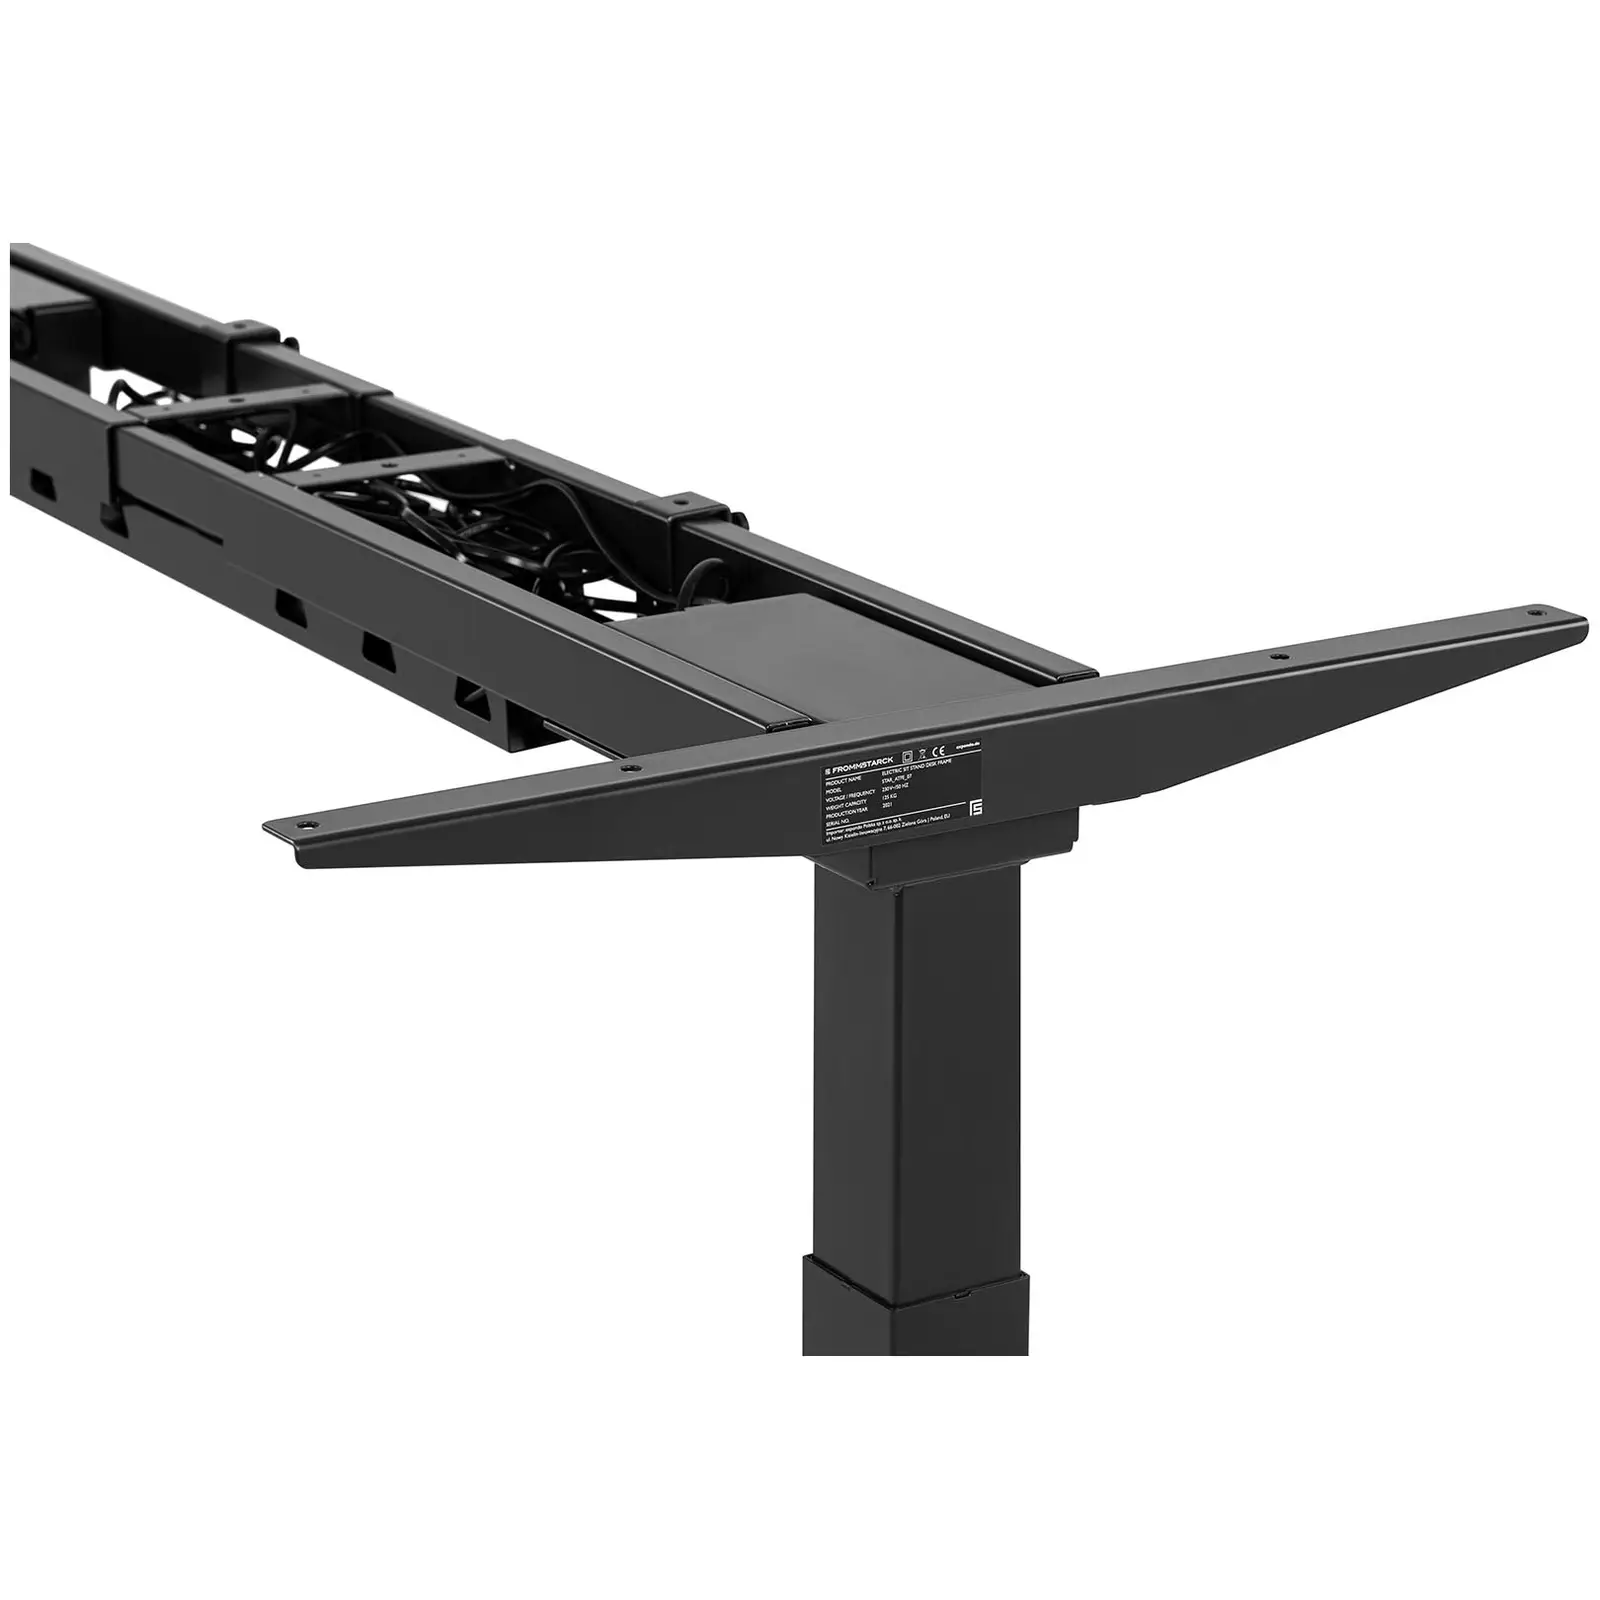 Bastidor para mesa con ajuste de altura - 200 W- 125 kg - Negro